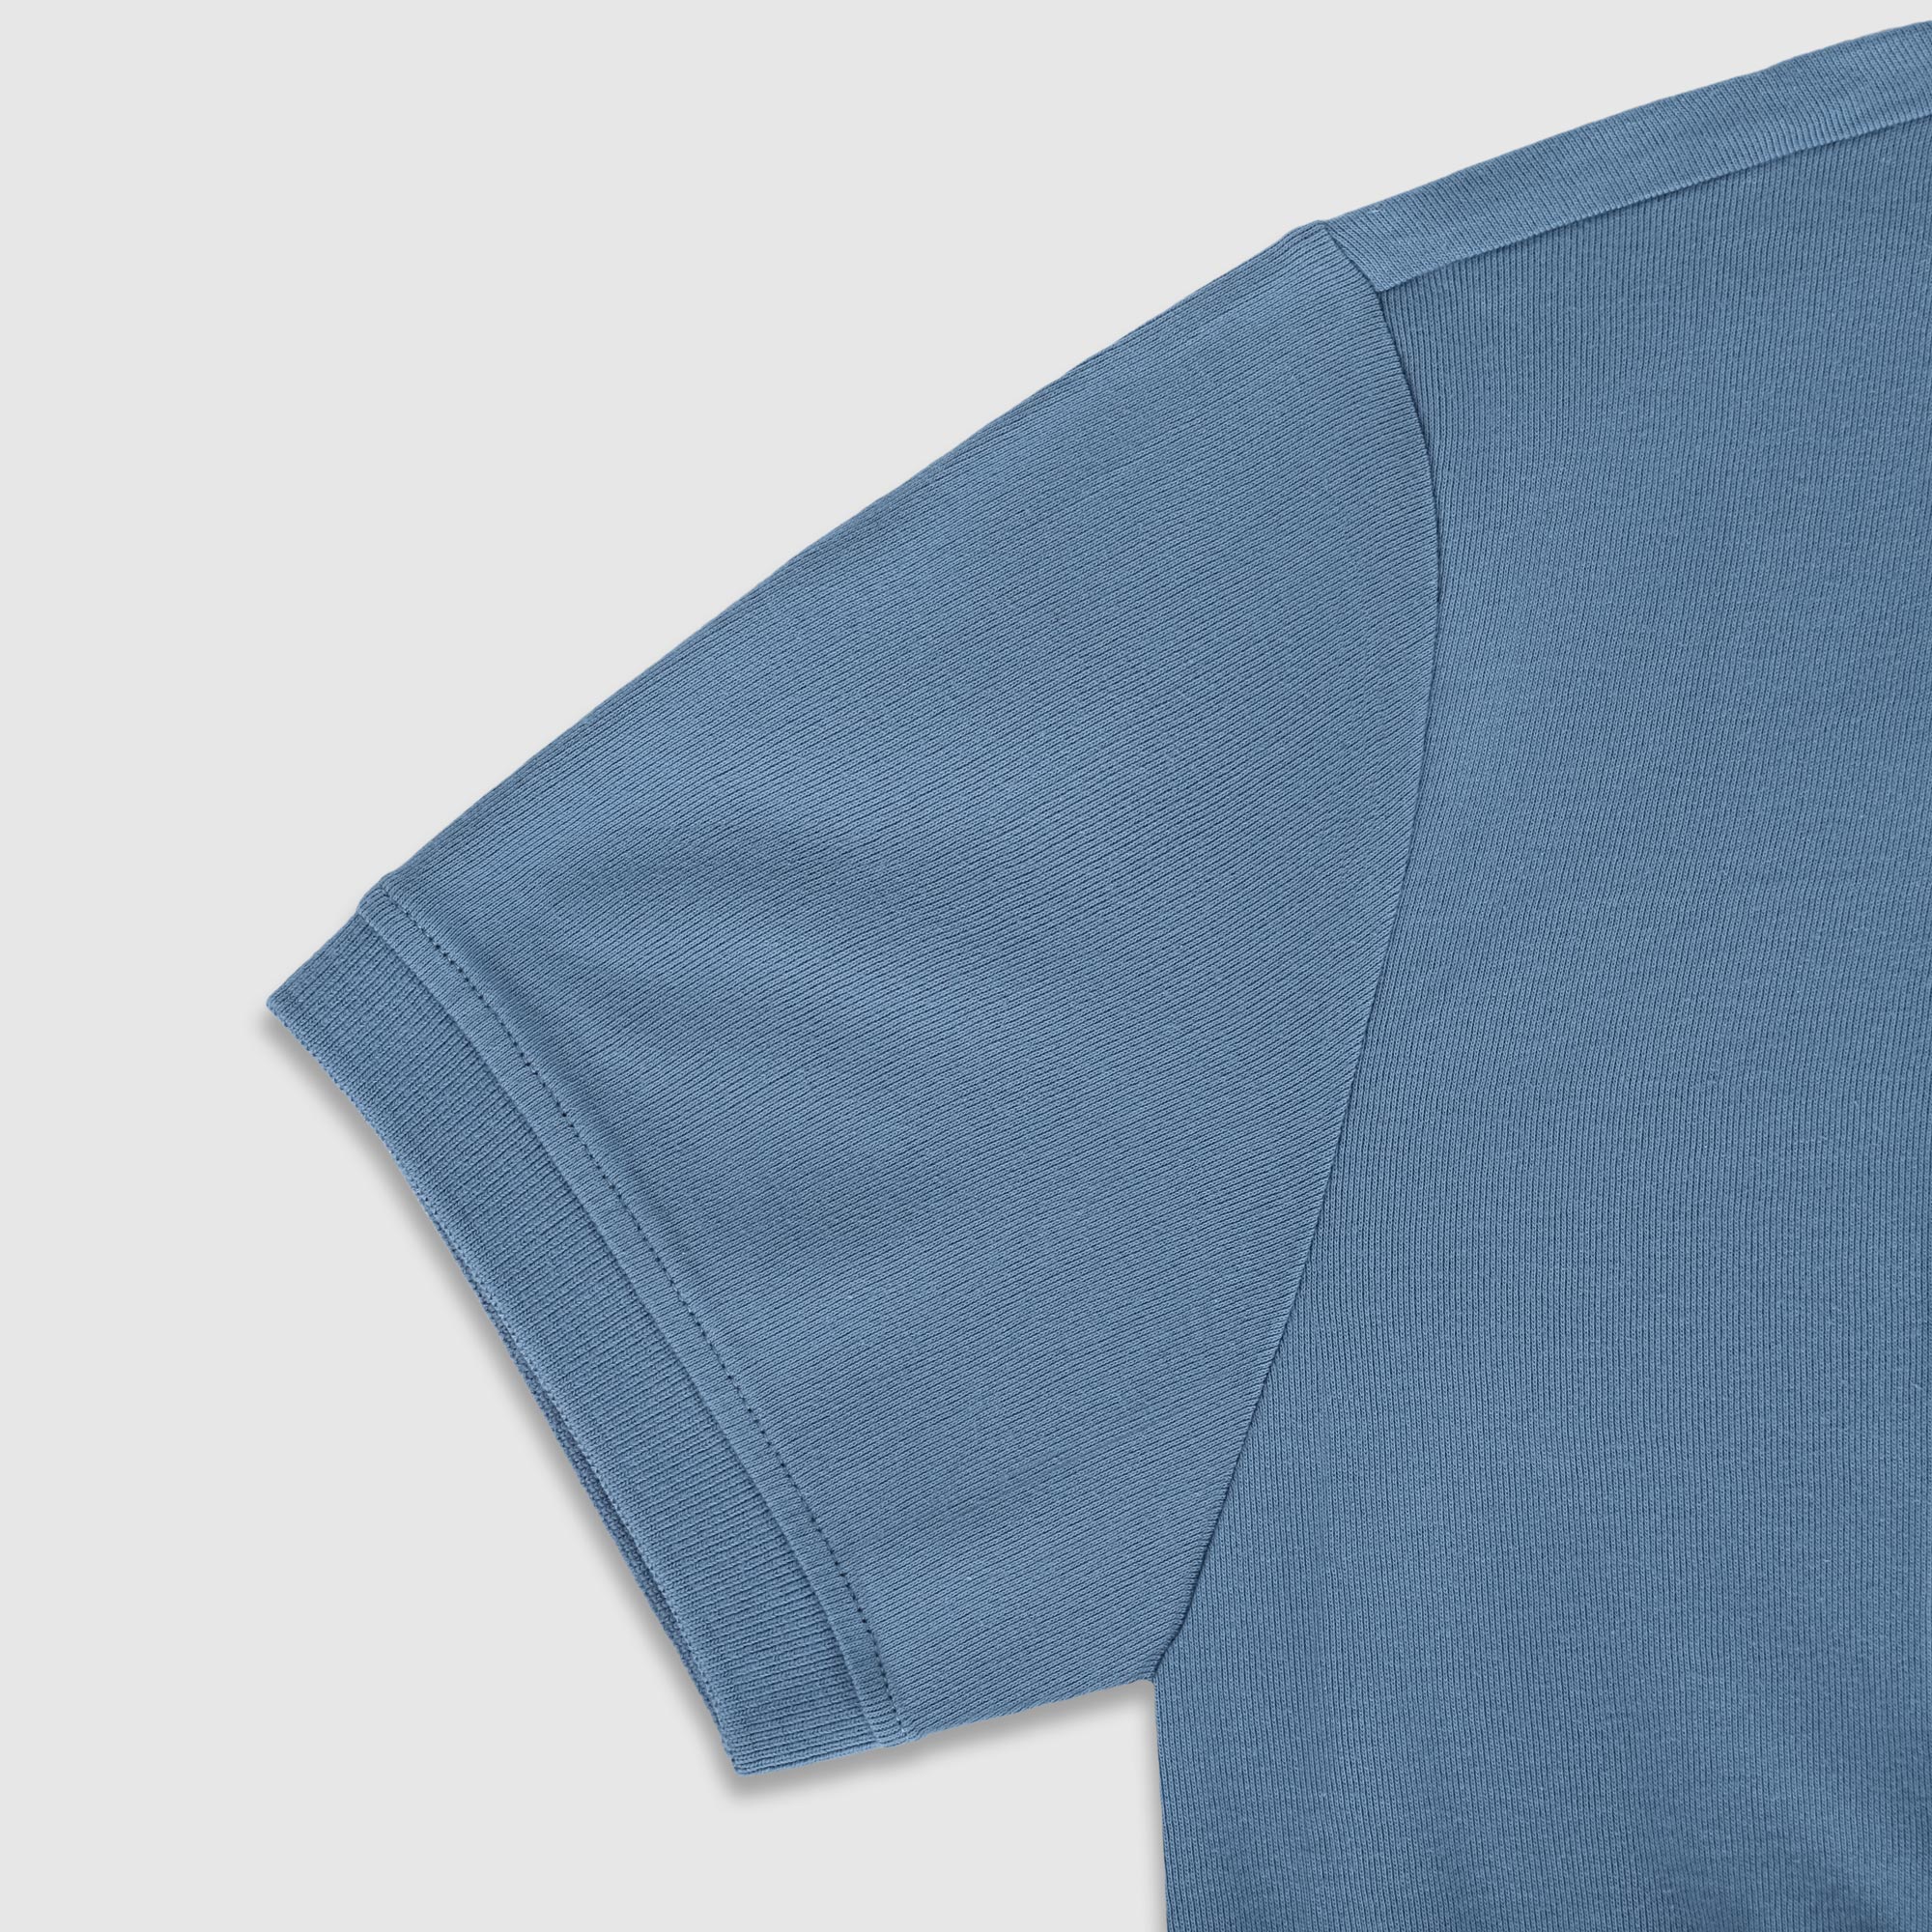 Рубашка мужская Diva Teks поло голубая, цвет голубой, размер XL - фото 4